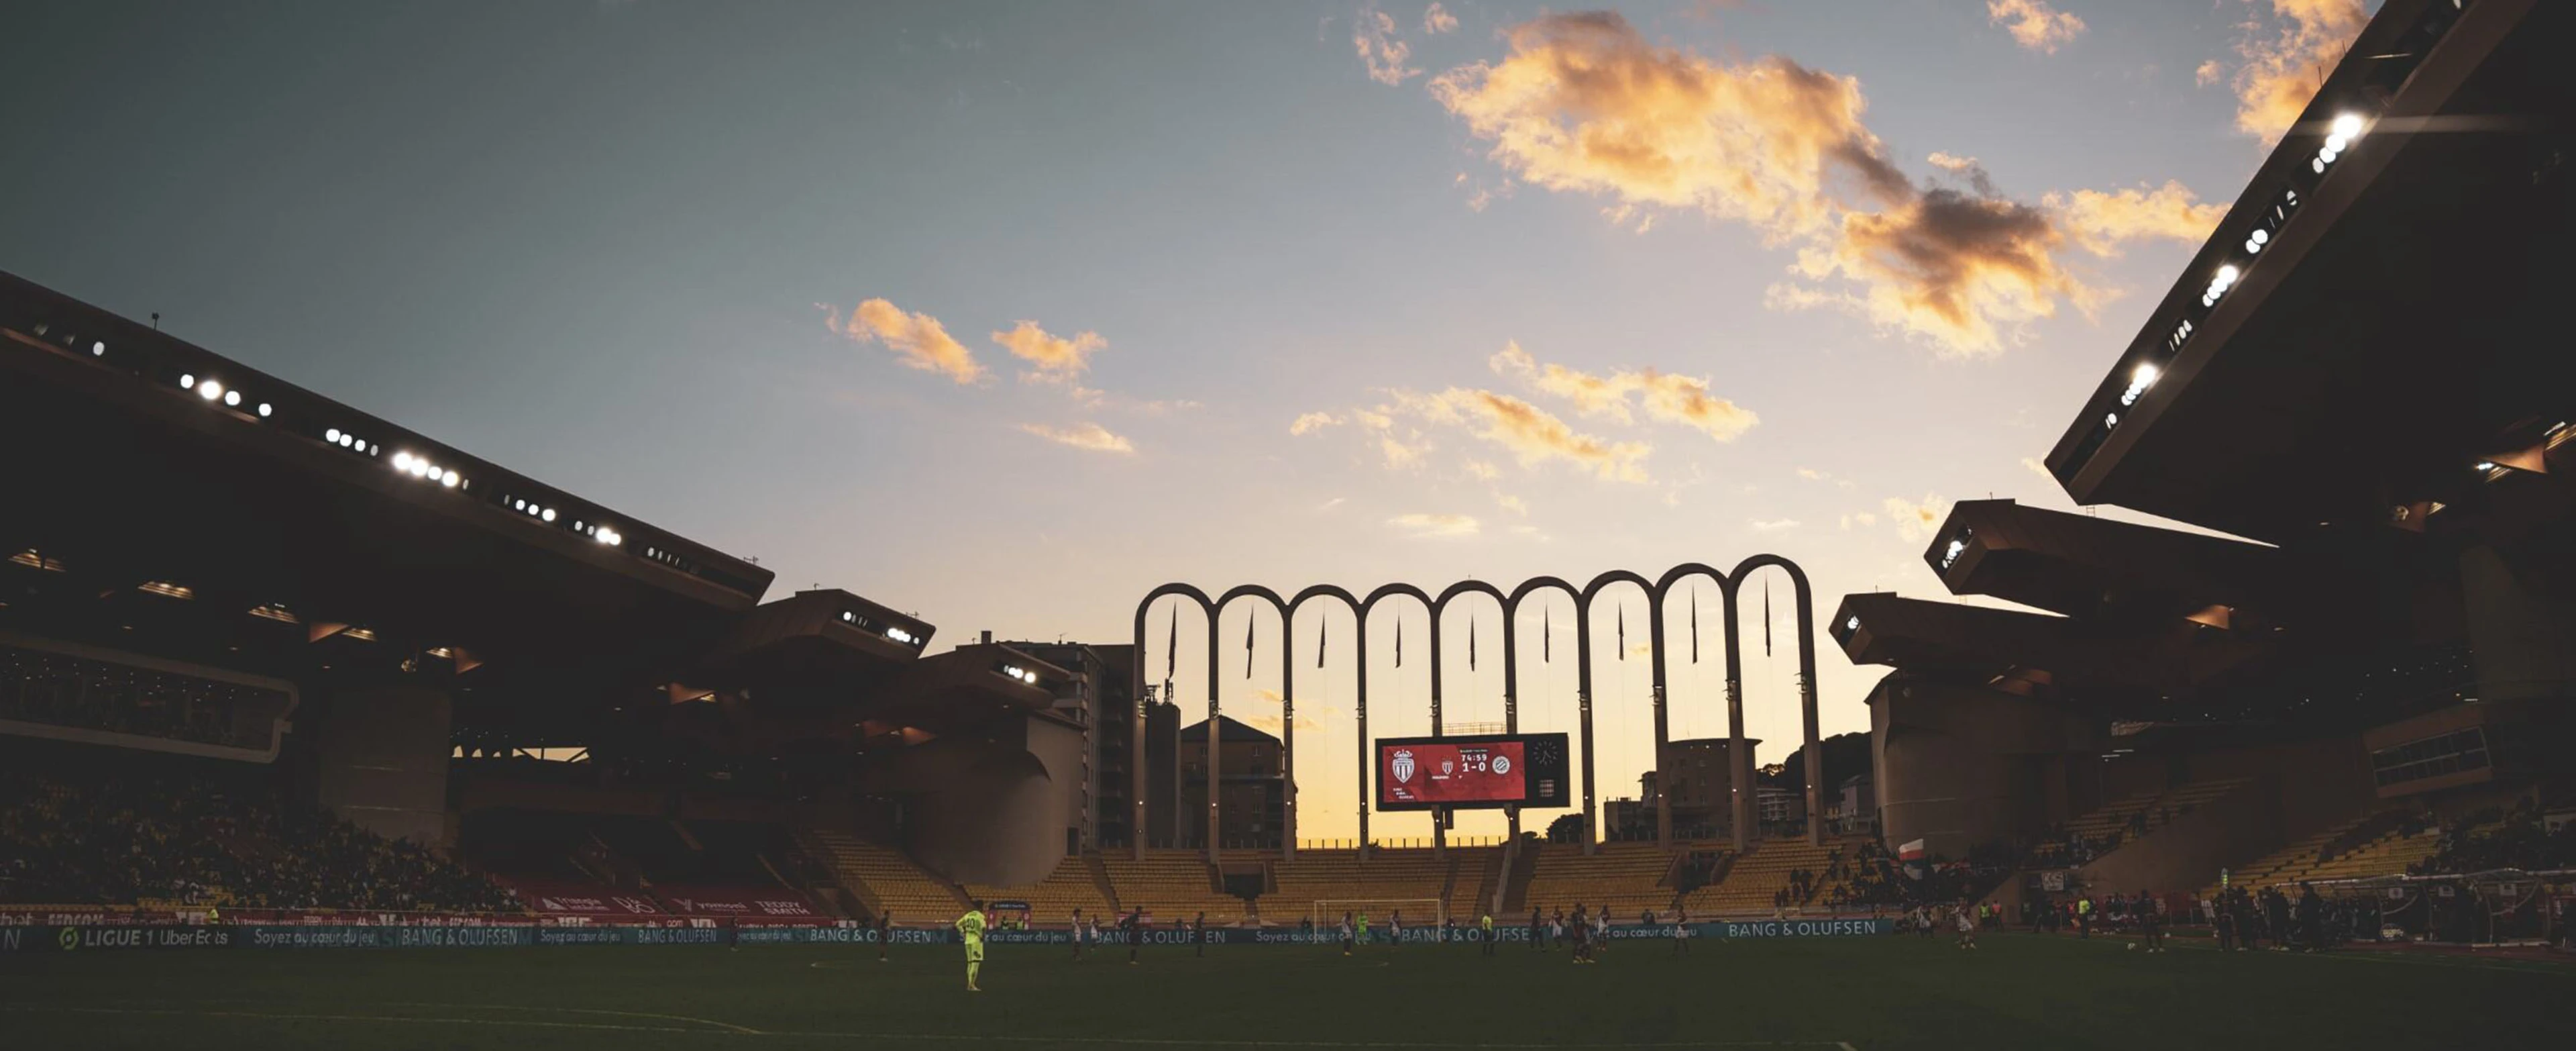 AS Monaco stadium in sunset